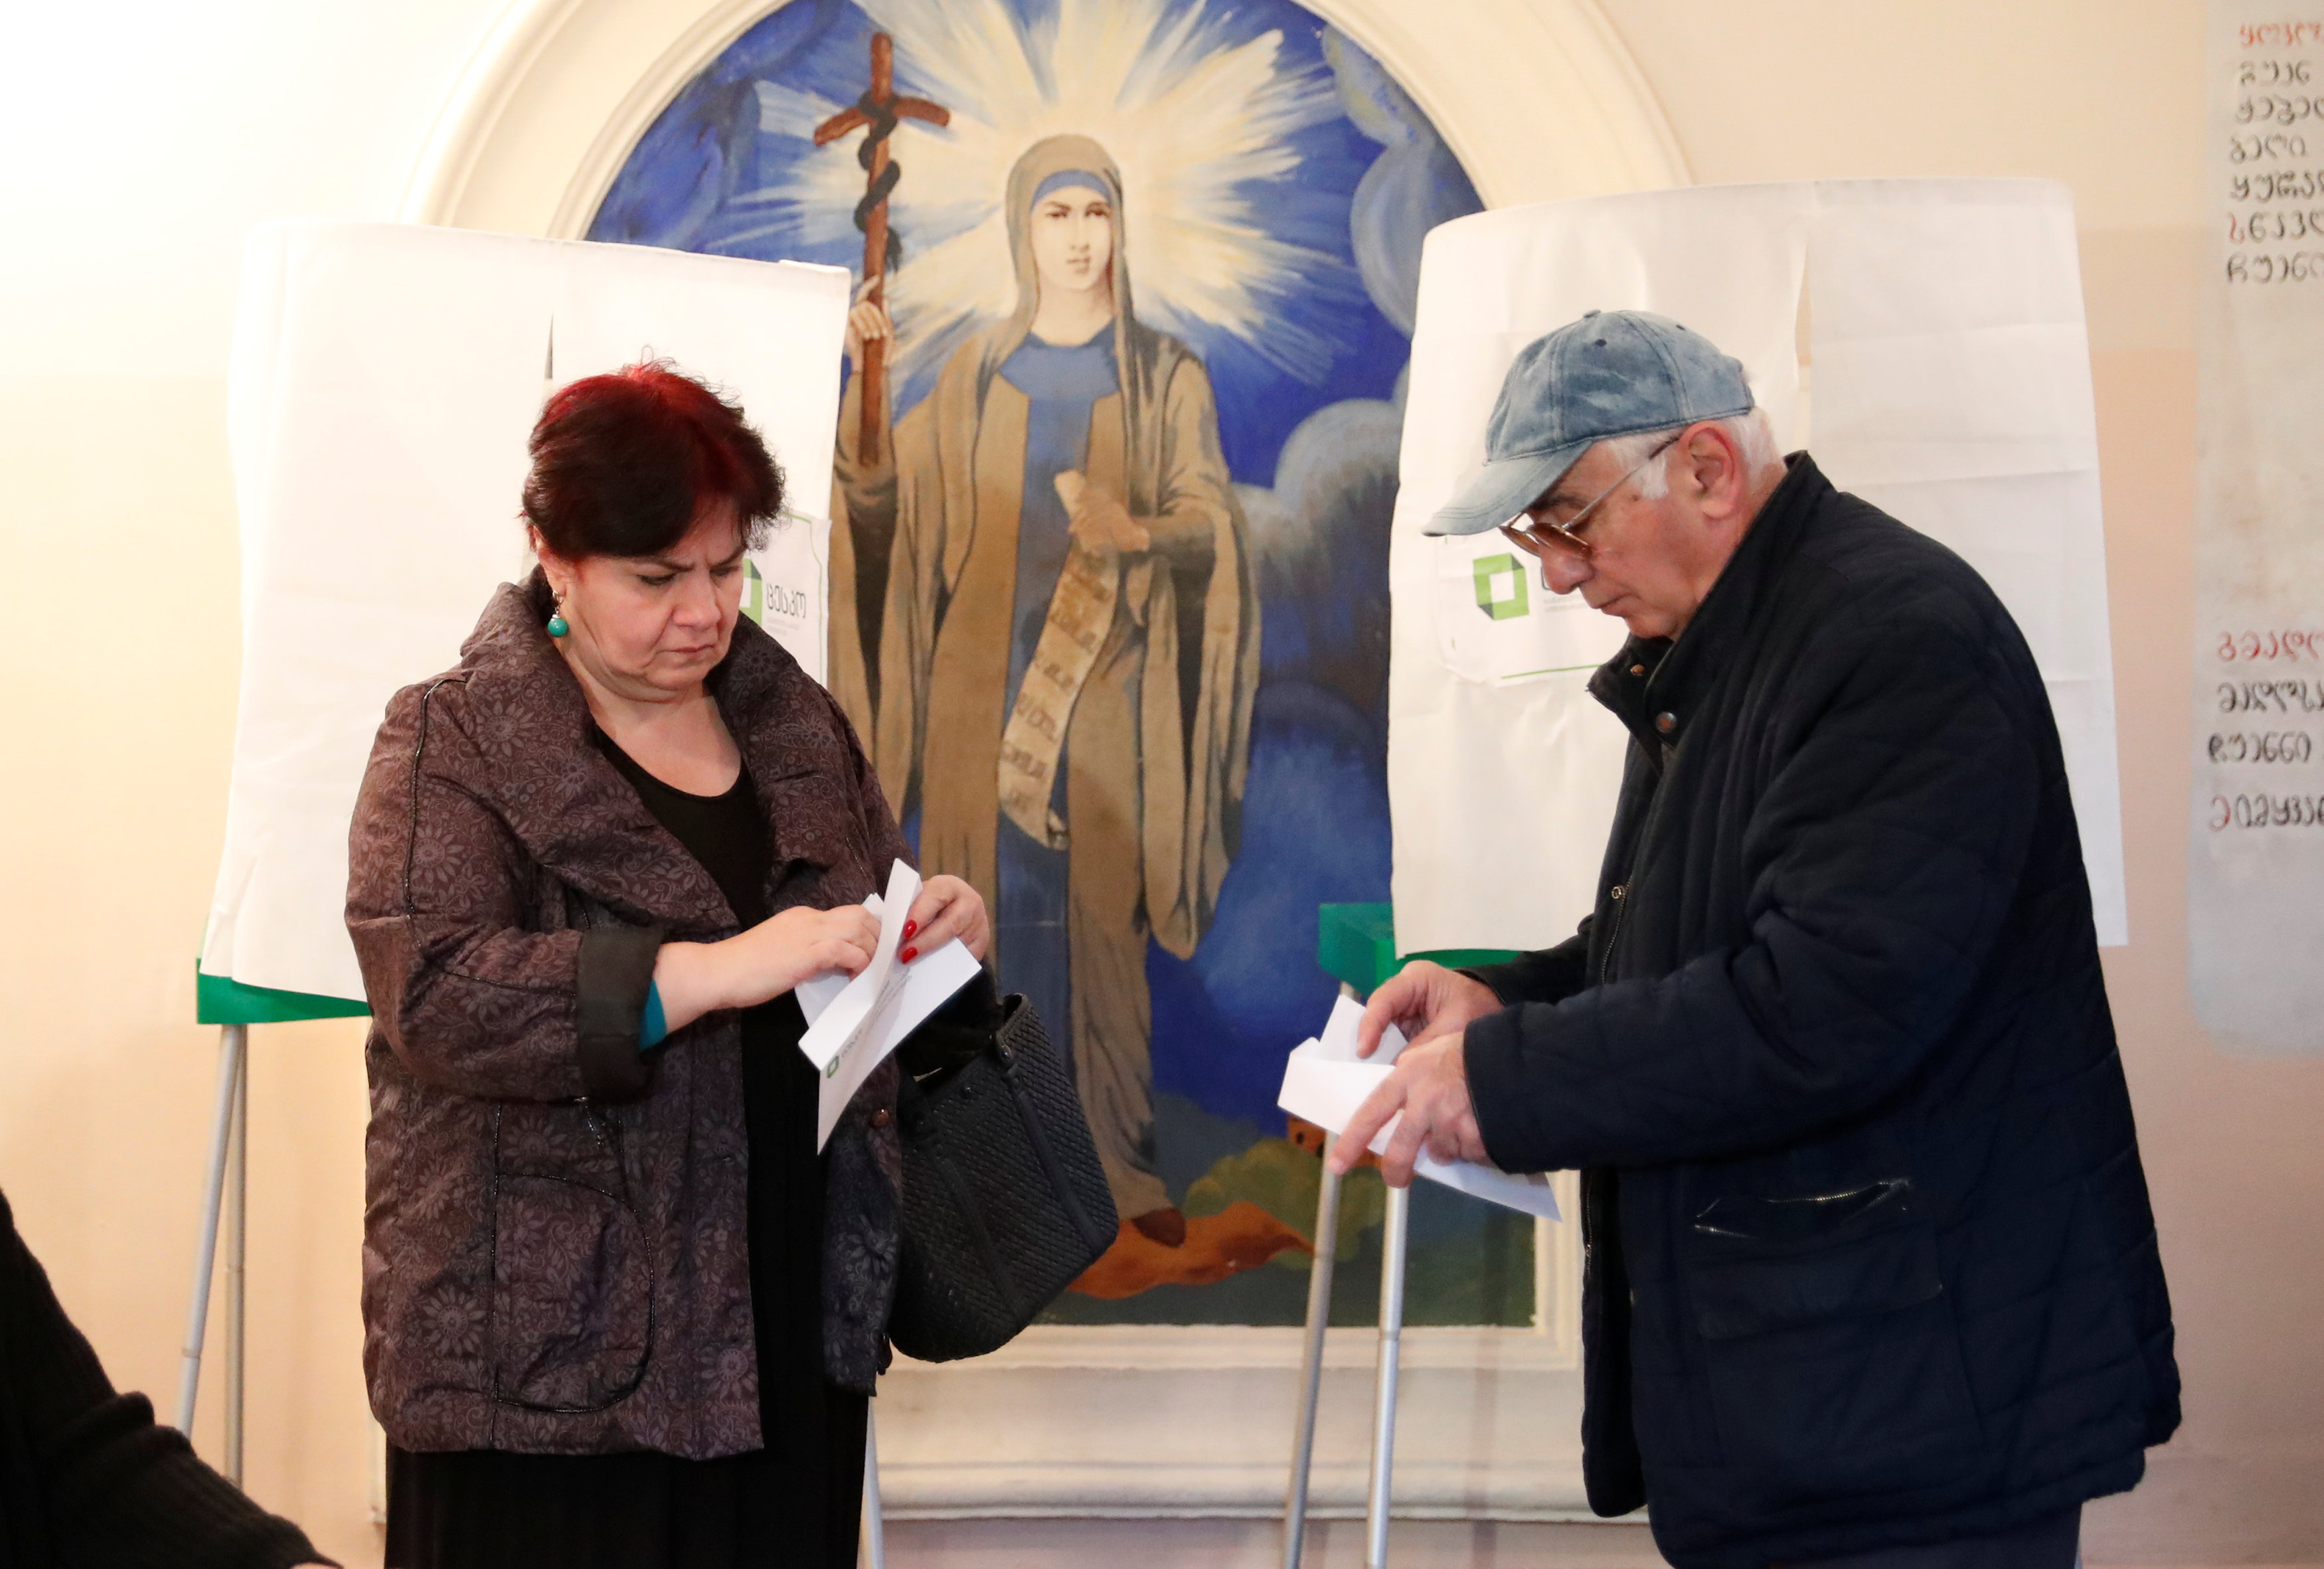 مواطنان يشاركان فى انتخابات الرئاسة الجورجية